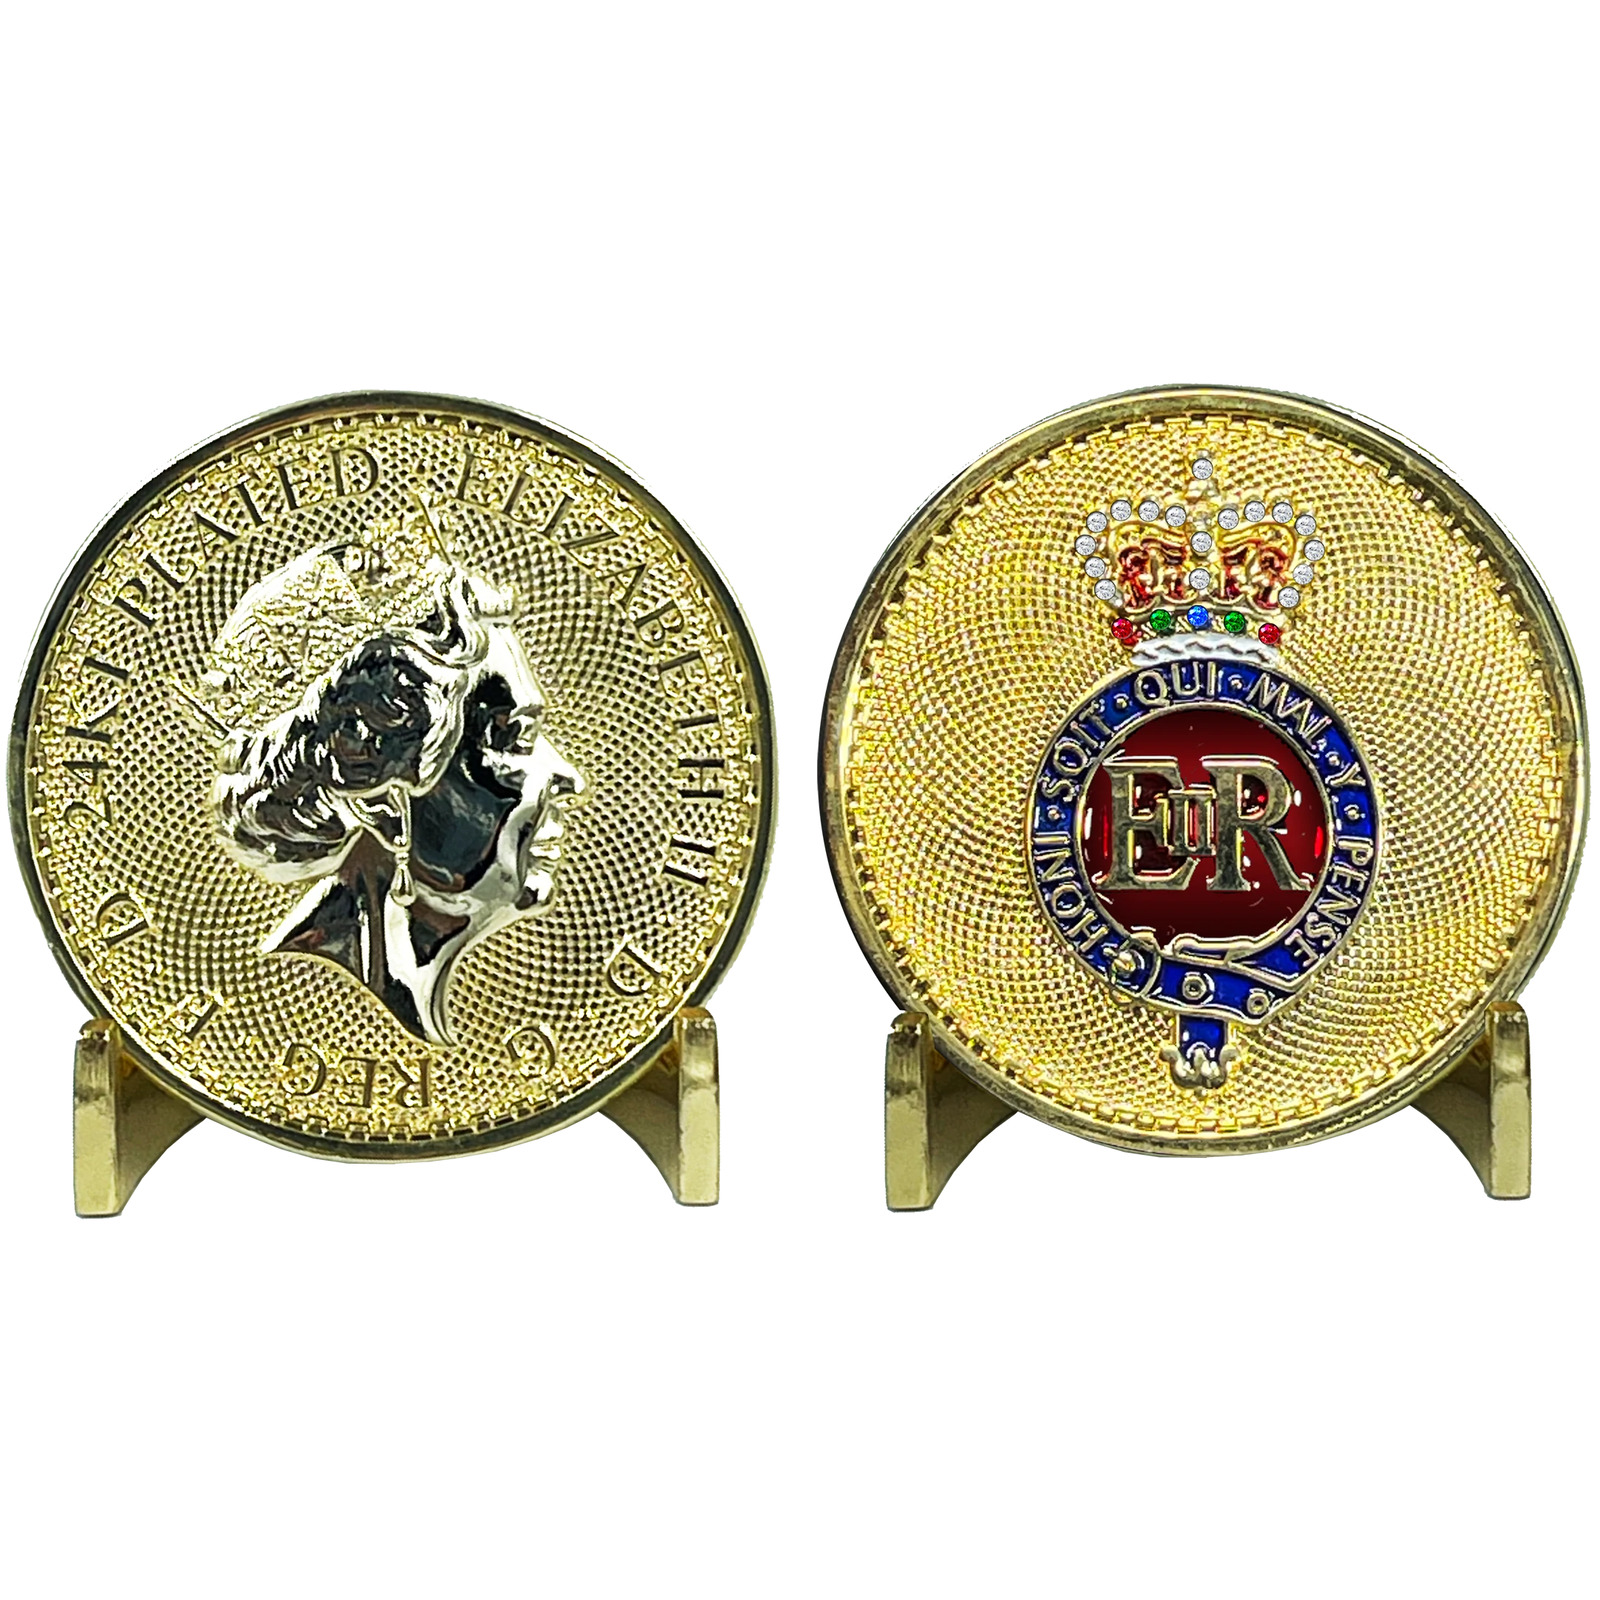 BL8-010 Queen Elizabeth 24KT Gold Plated Challenge Coin UK Queen's Guard Grenadi